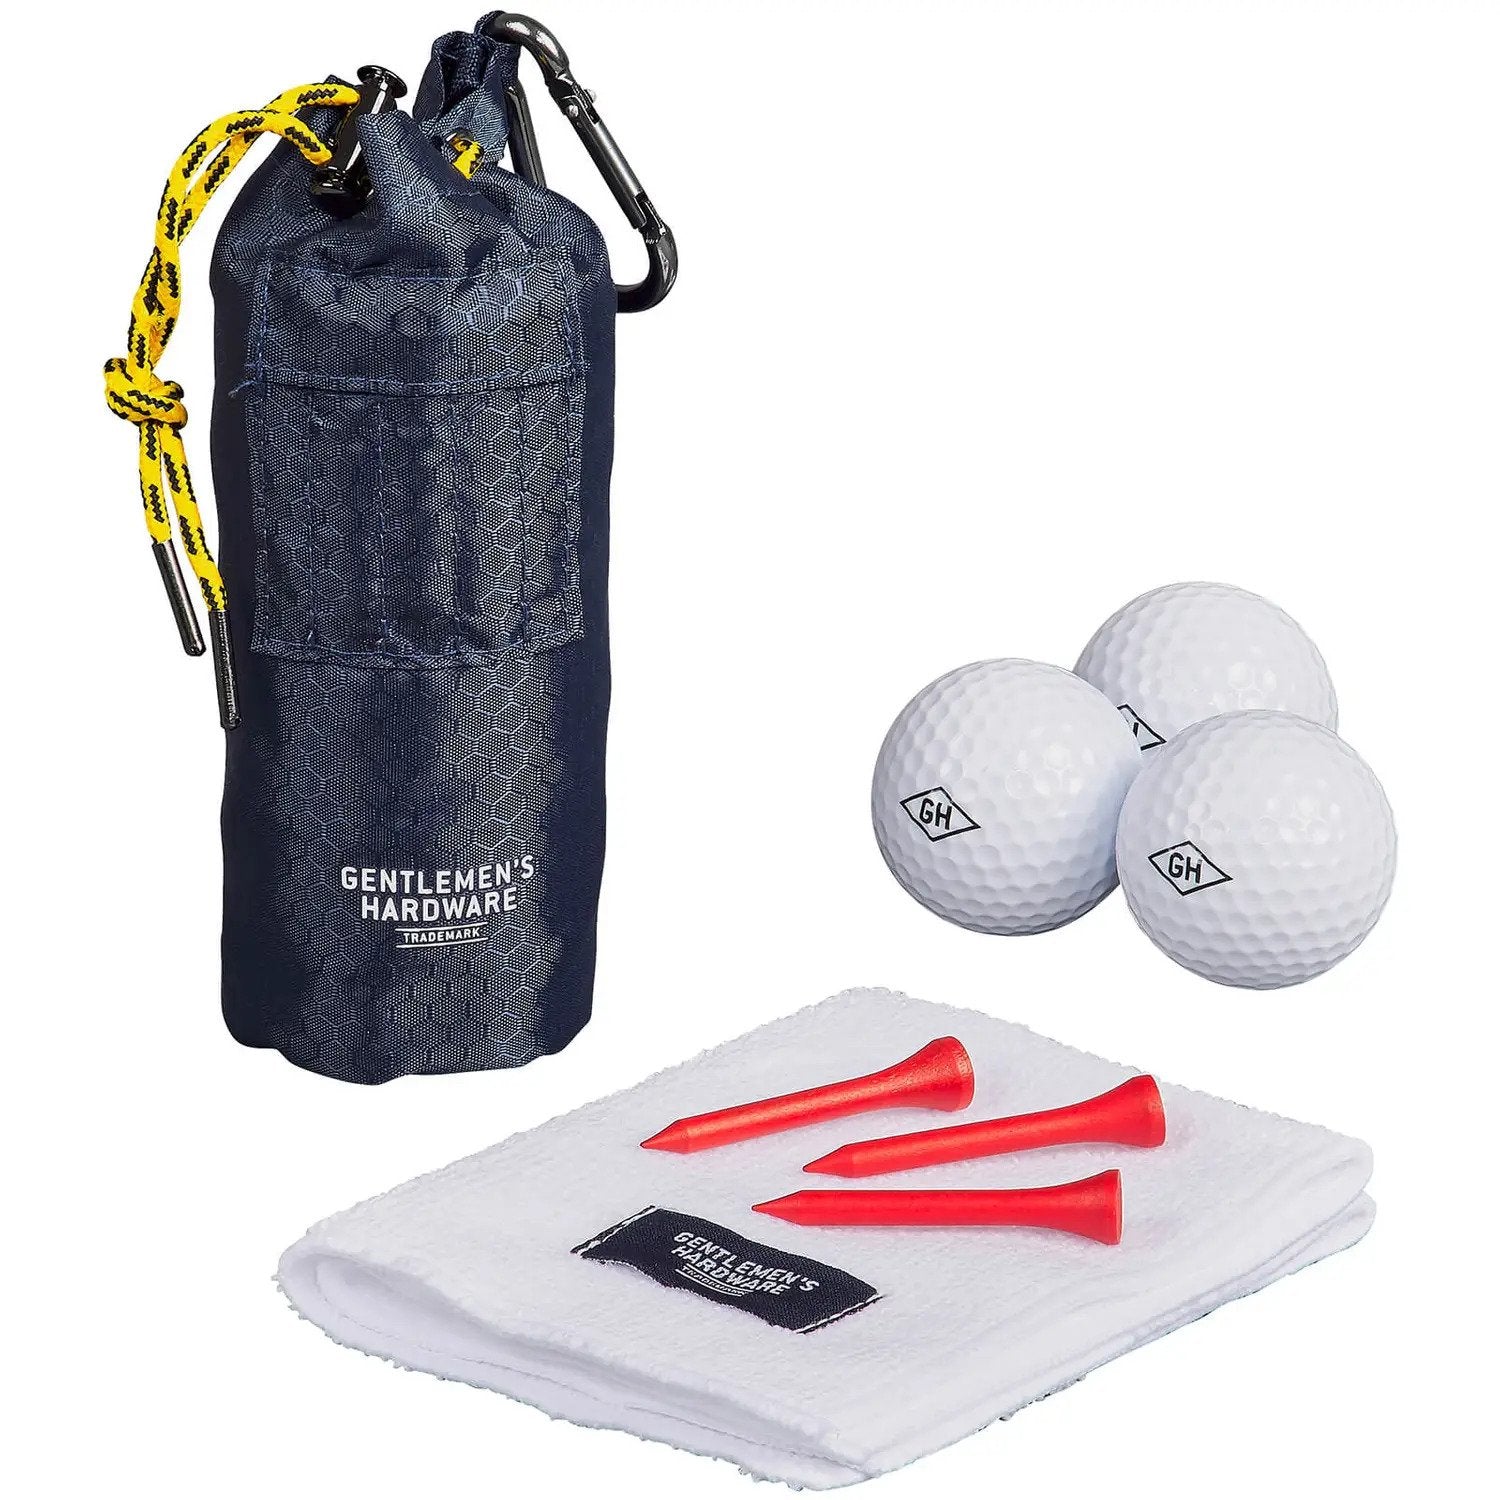 Golfer's Accessories Set